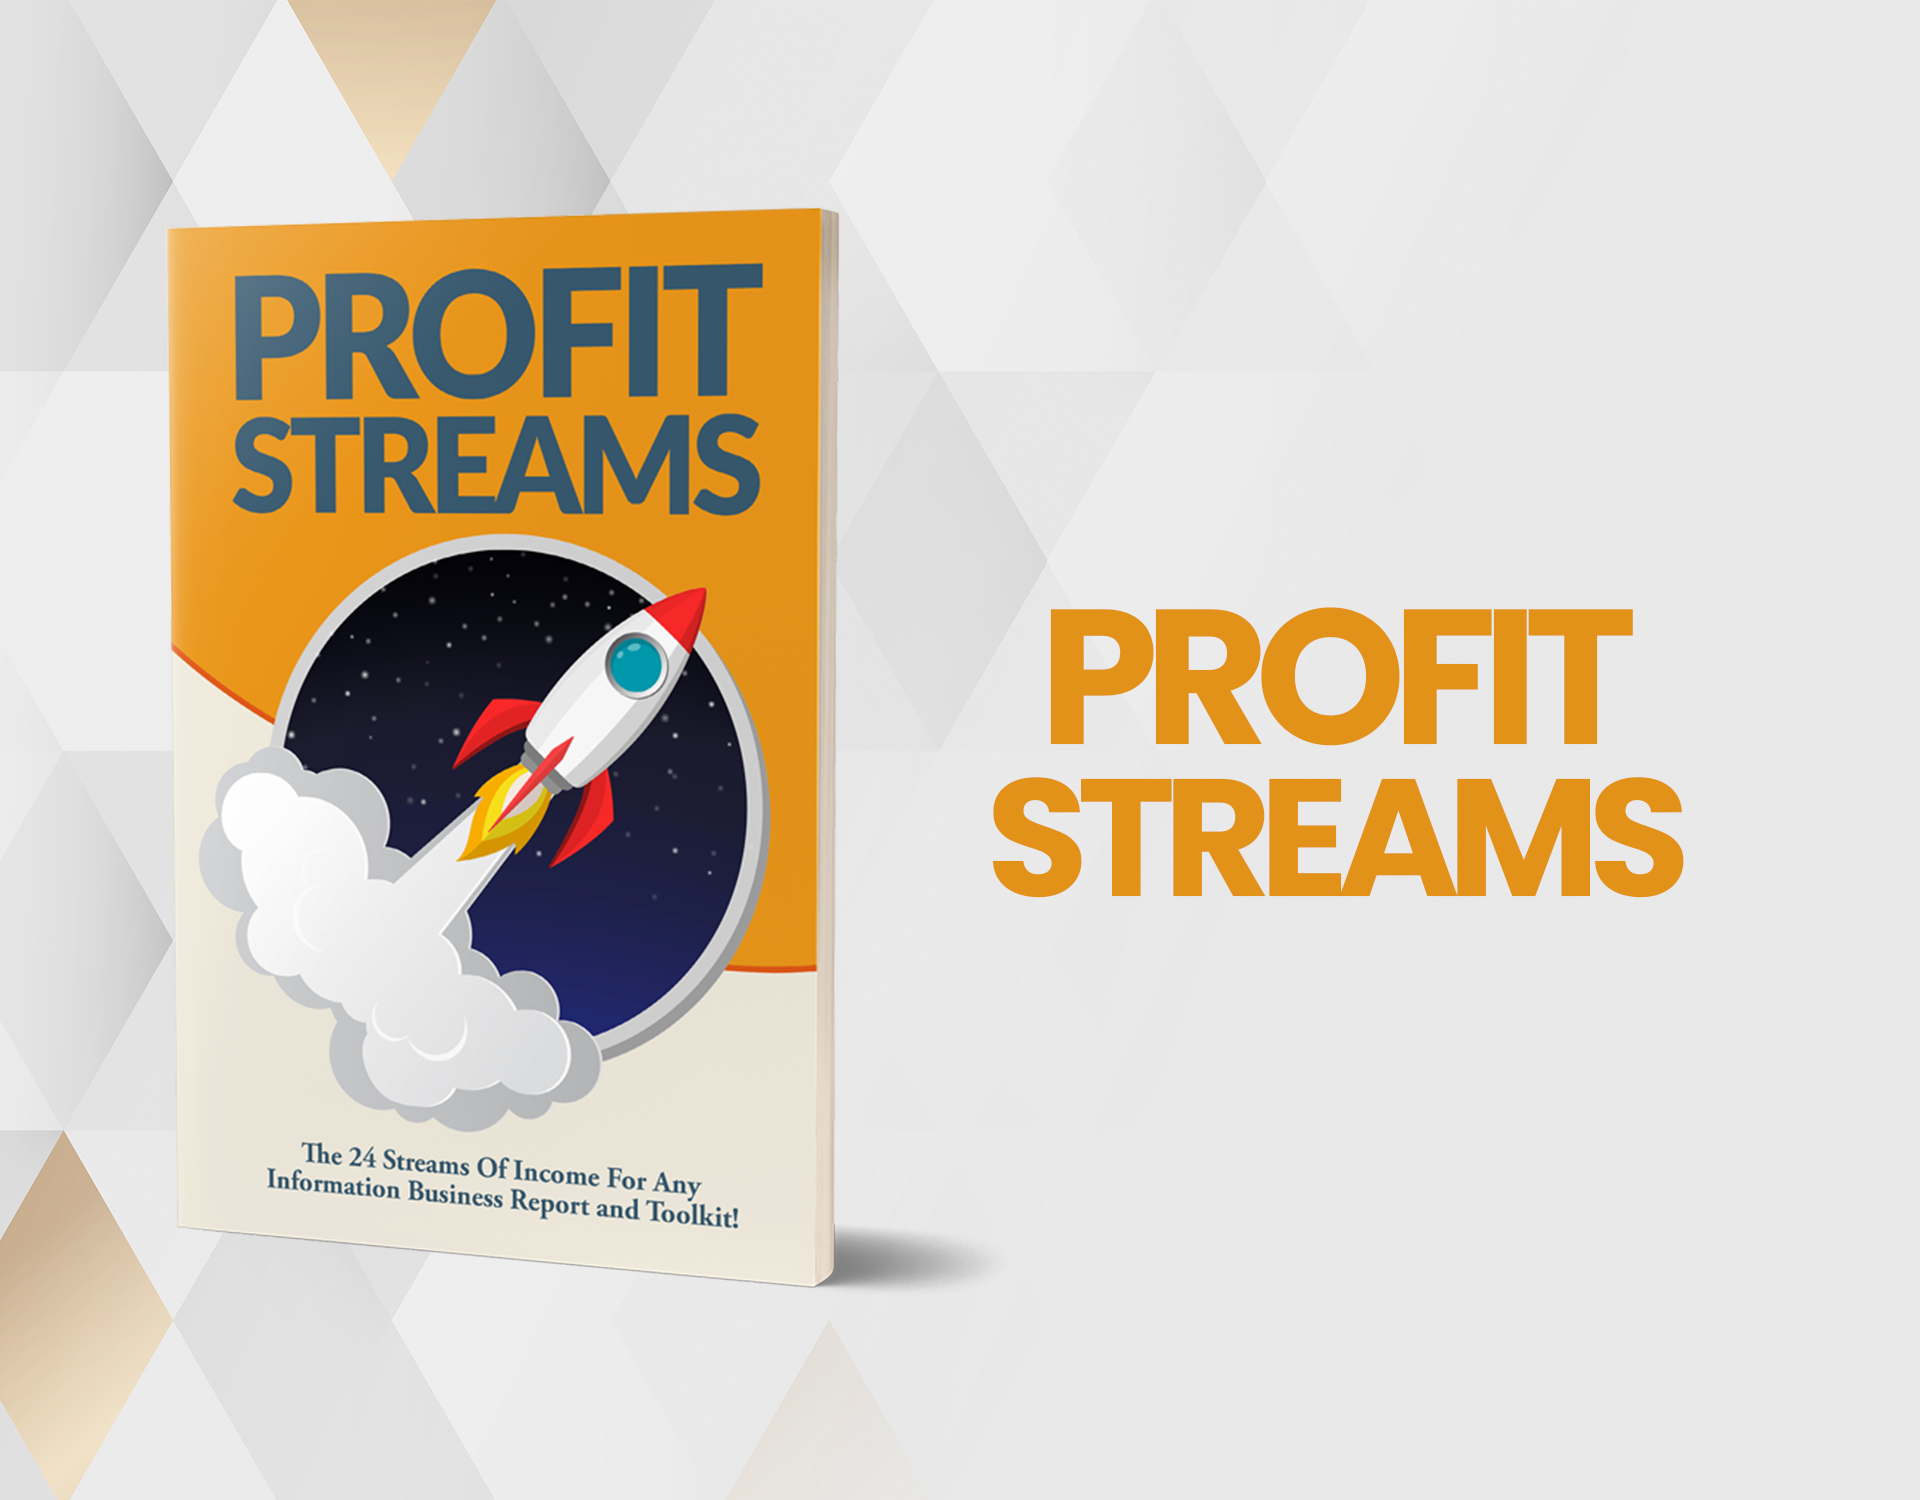 3. Profit Streams